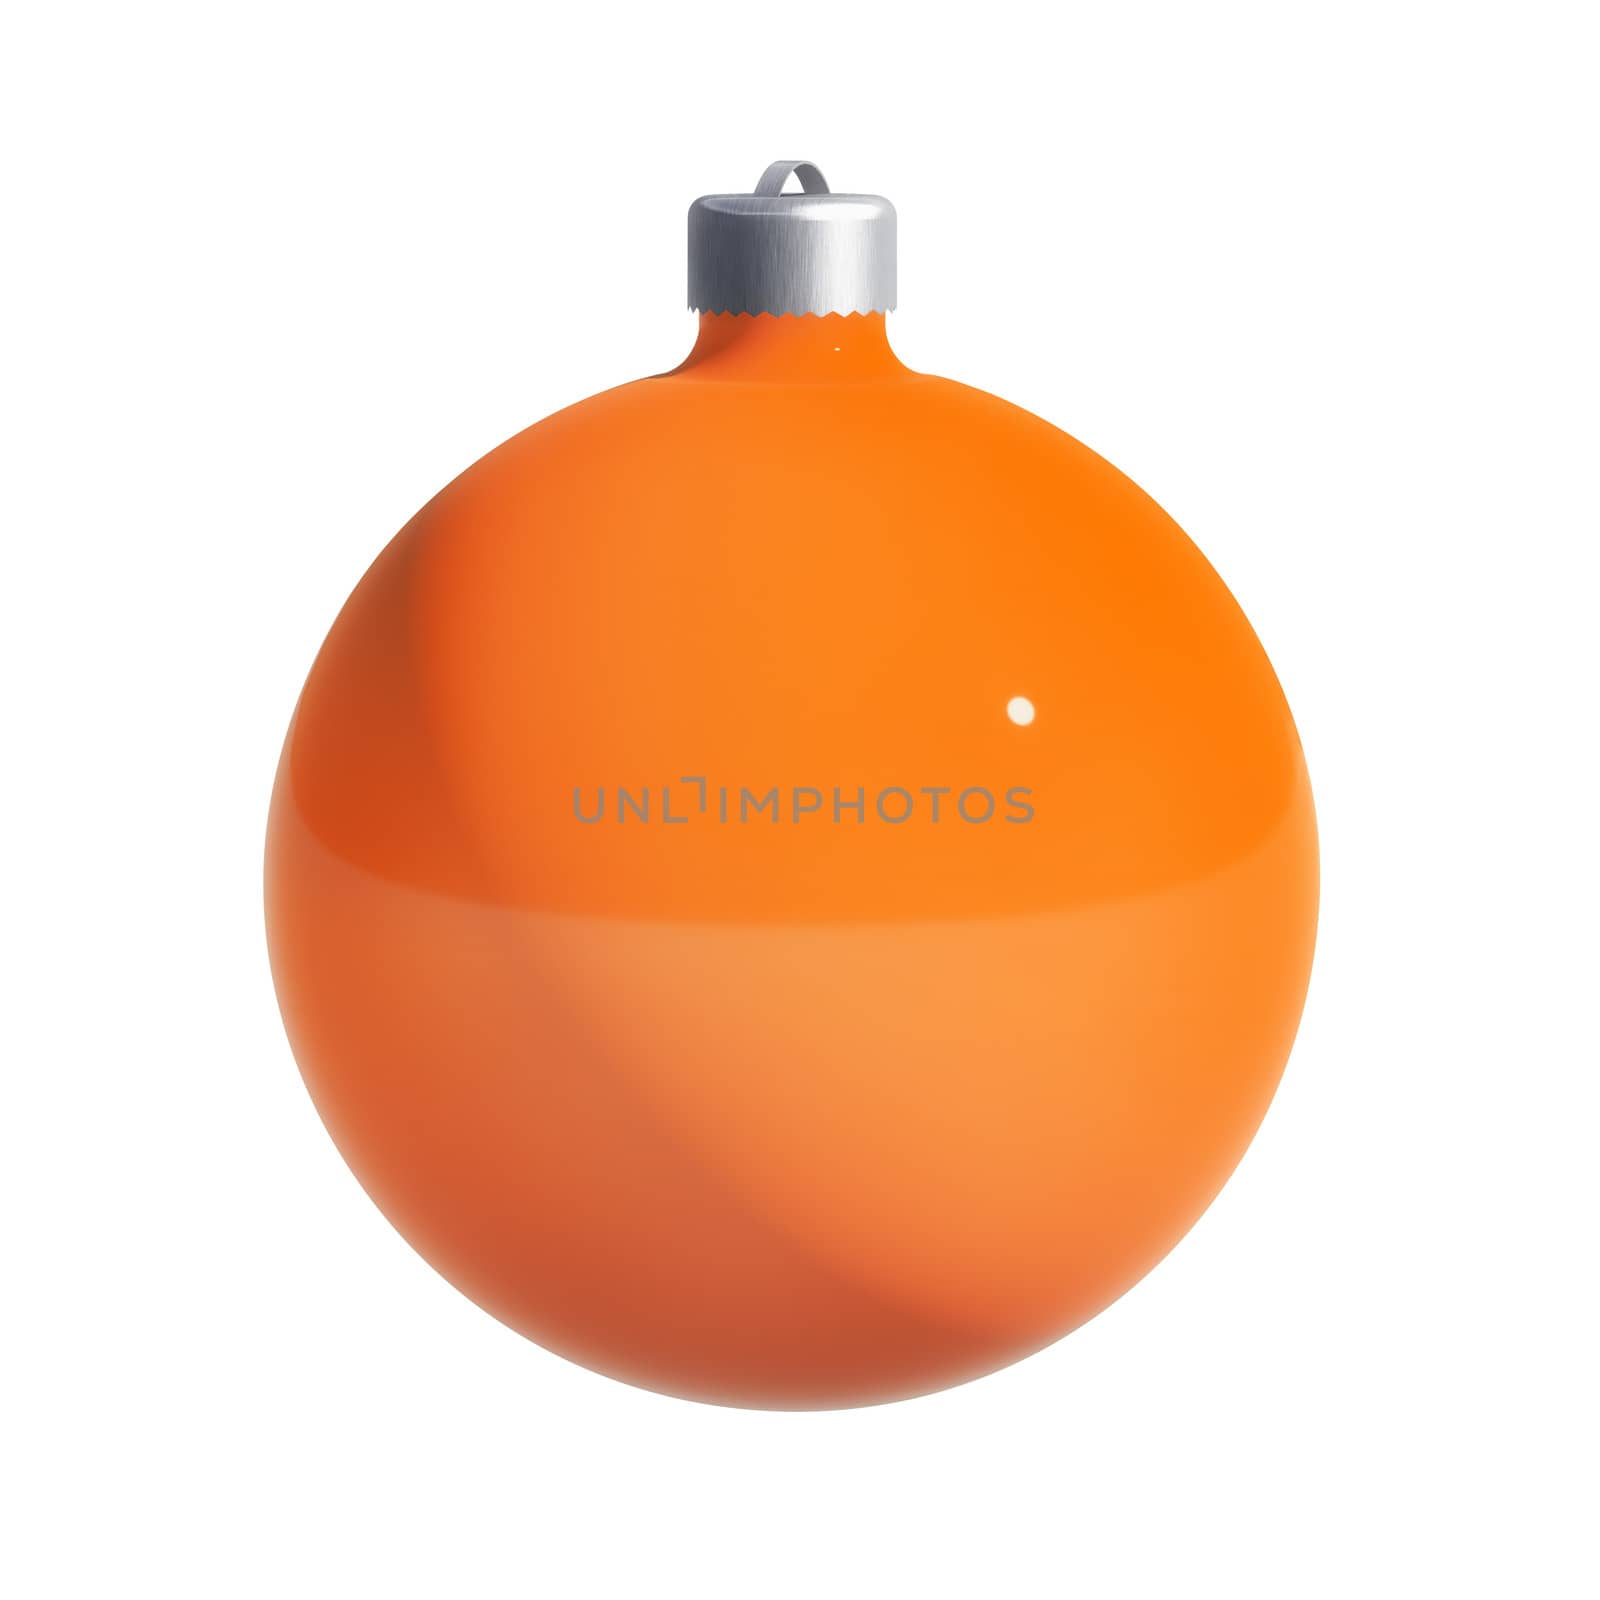 Orange-coloured Christmas decoration isolated on white